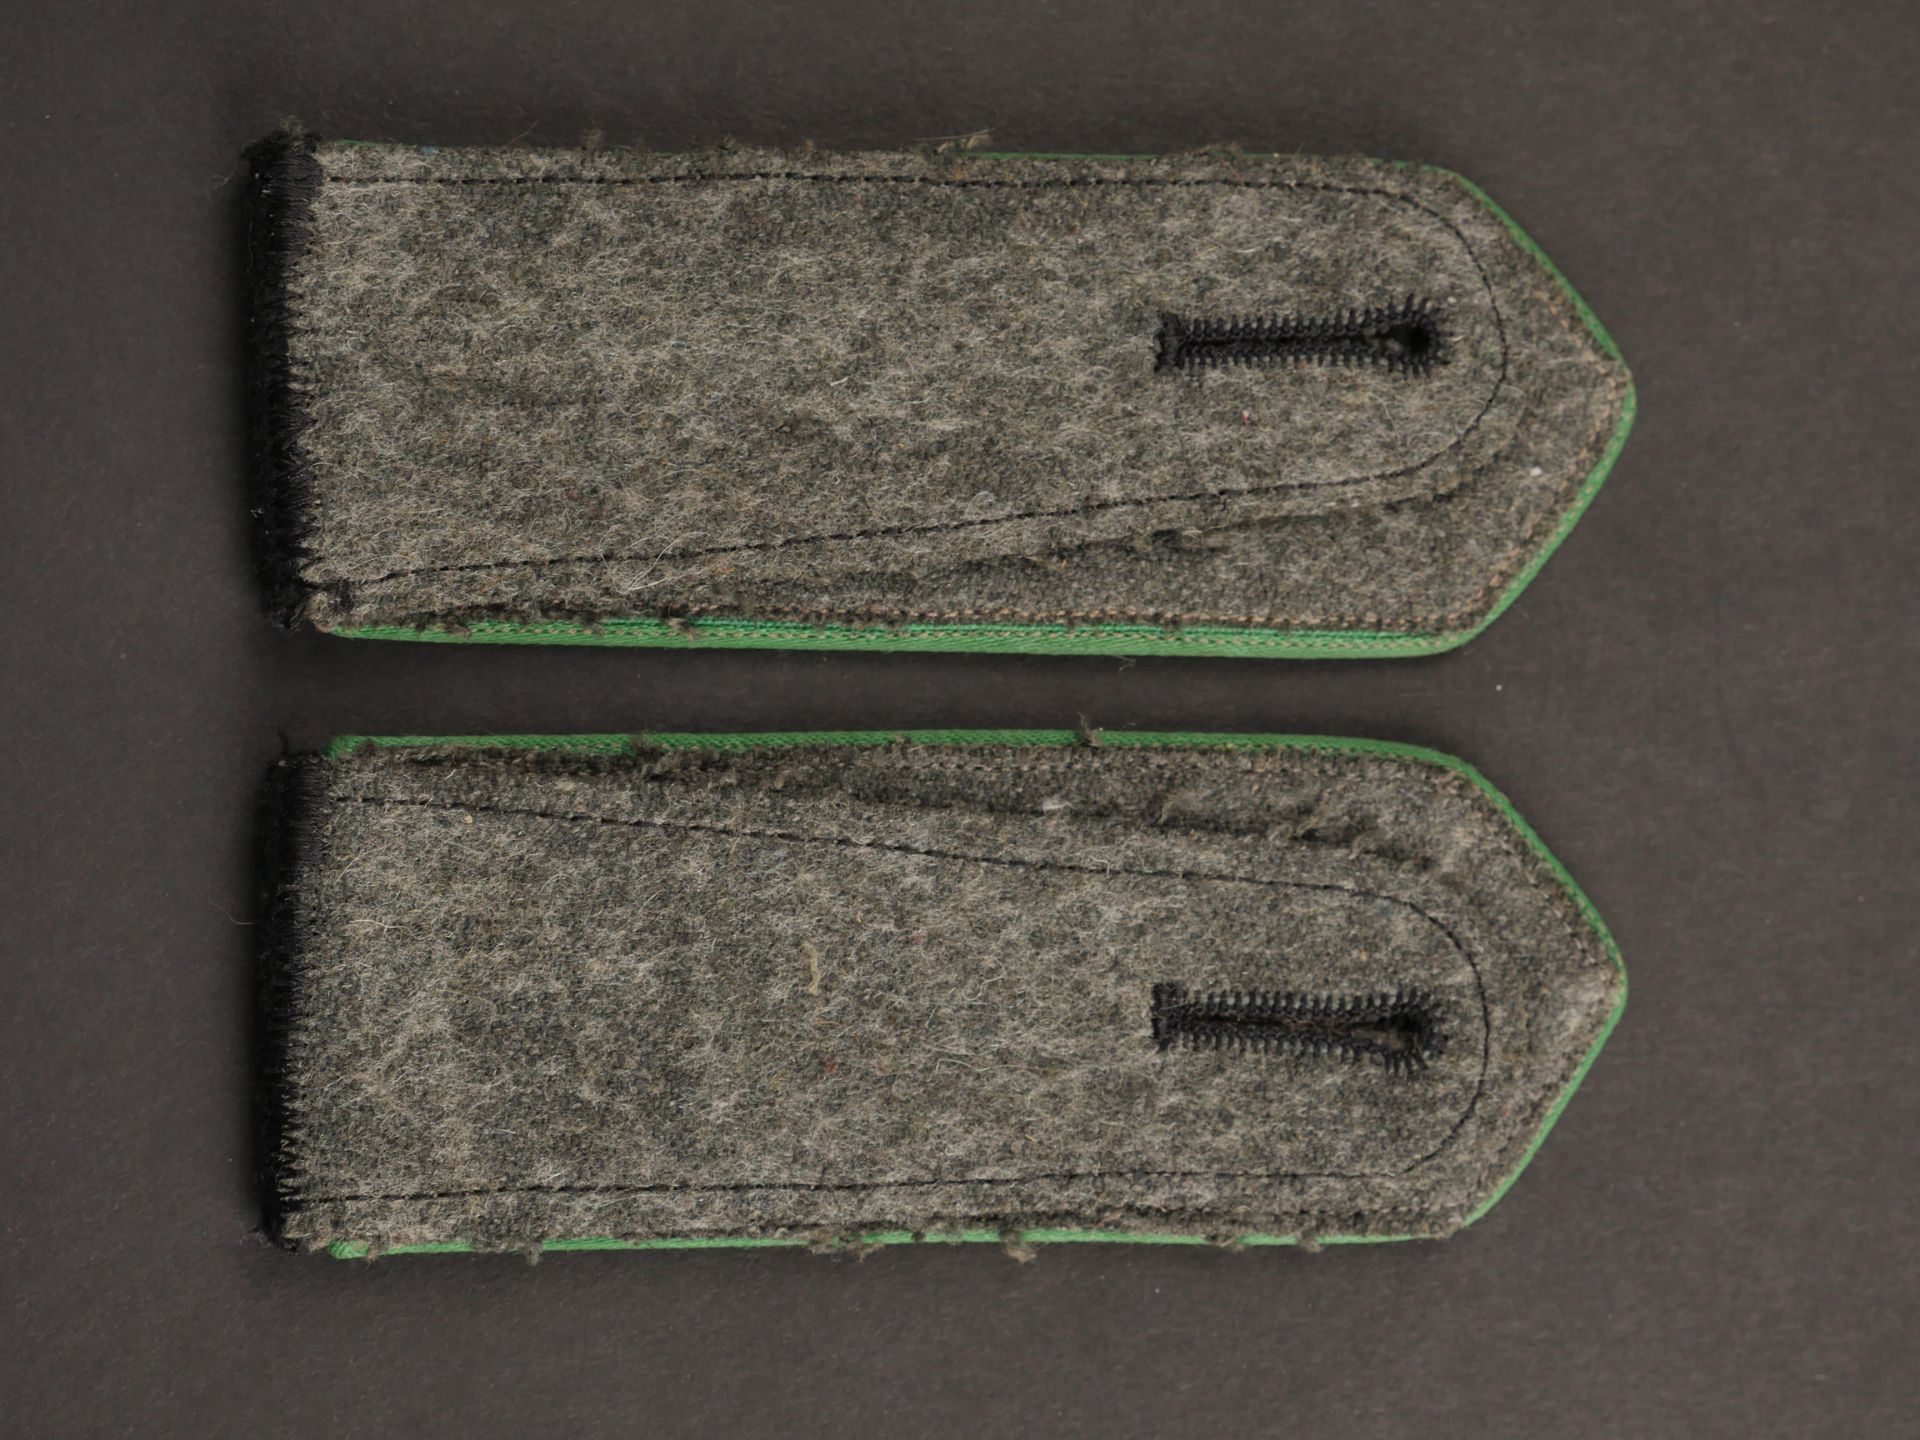 Pattes d epaule Schuma.Schuma shoulder straps. - Image 3 of 3